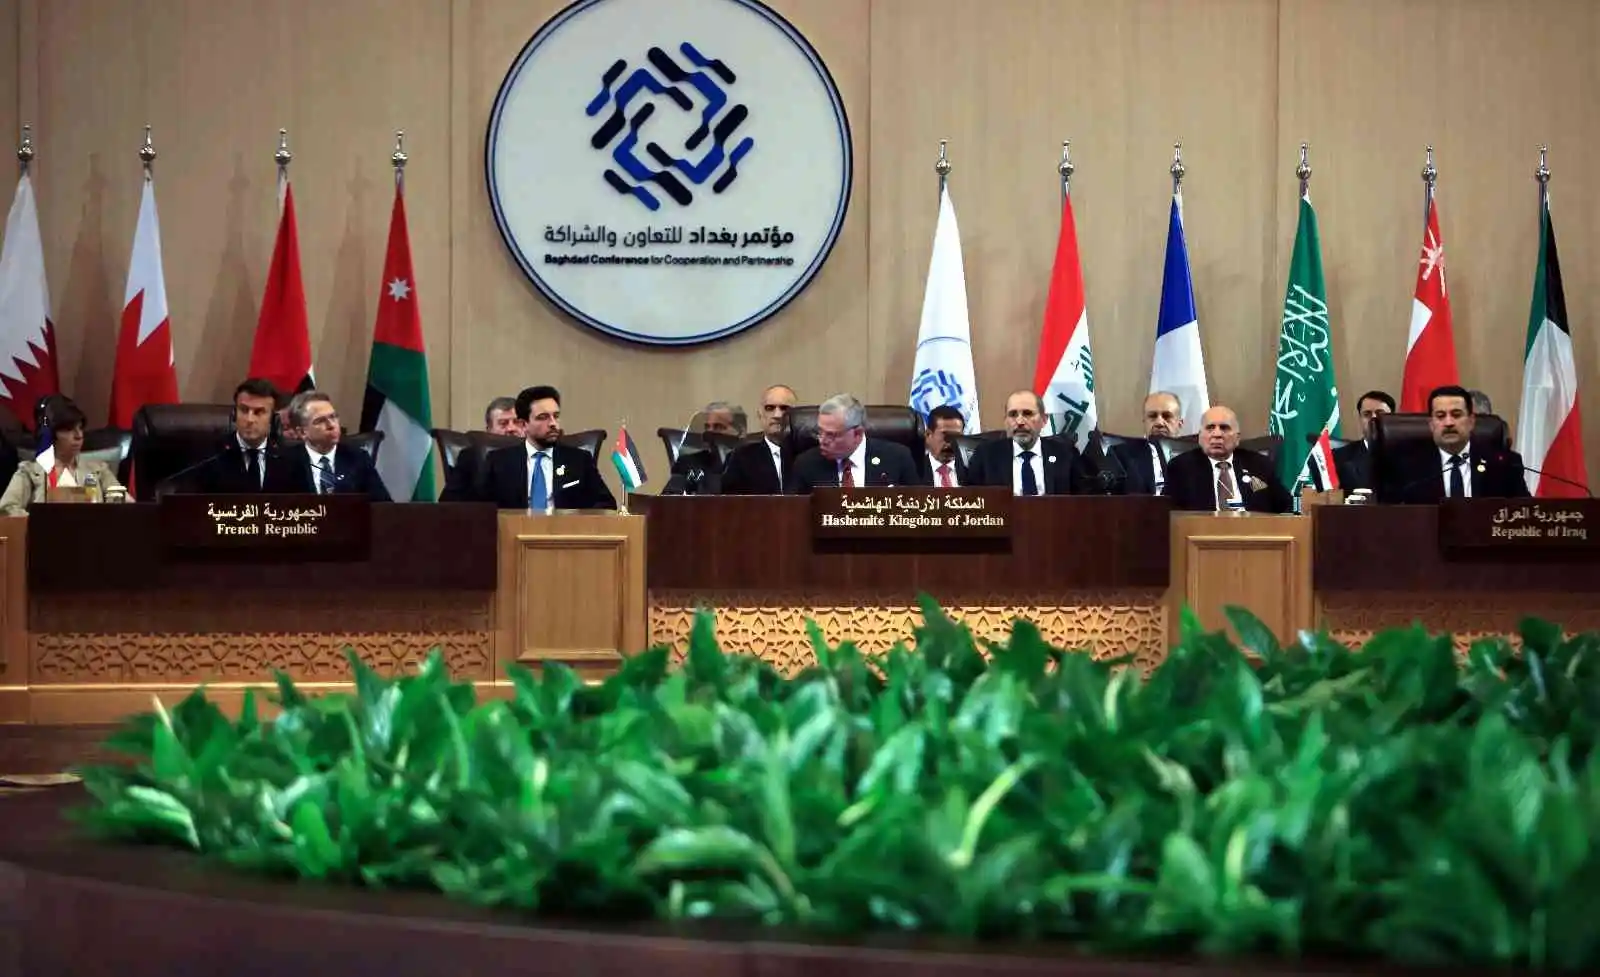 Bağdat İş Birliği ve Ortaklık Konferansı’nda Irak’a destek
